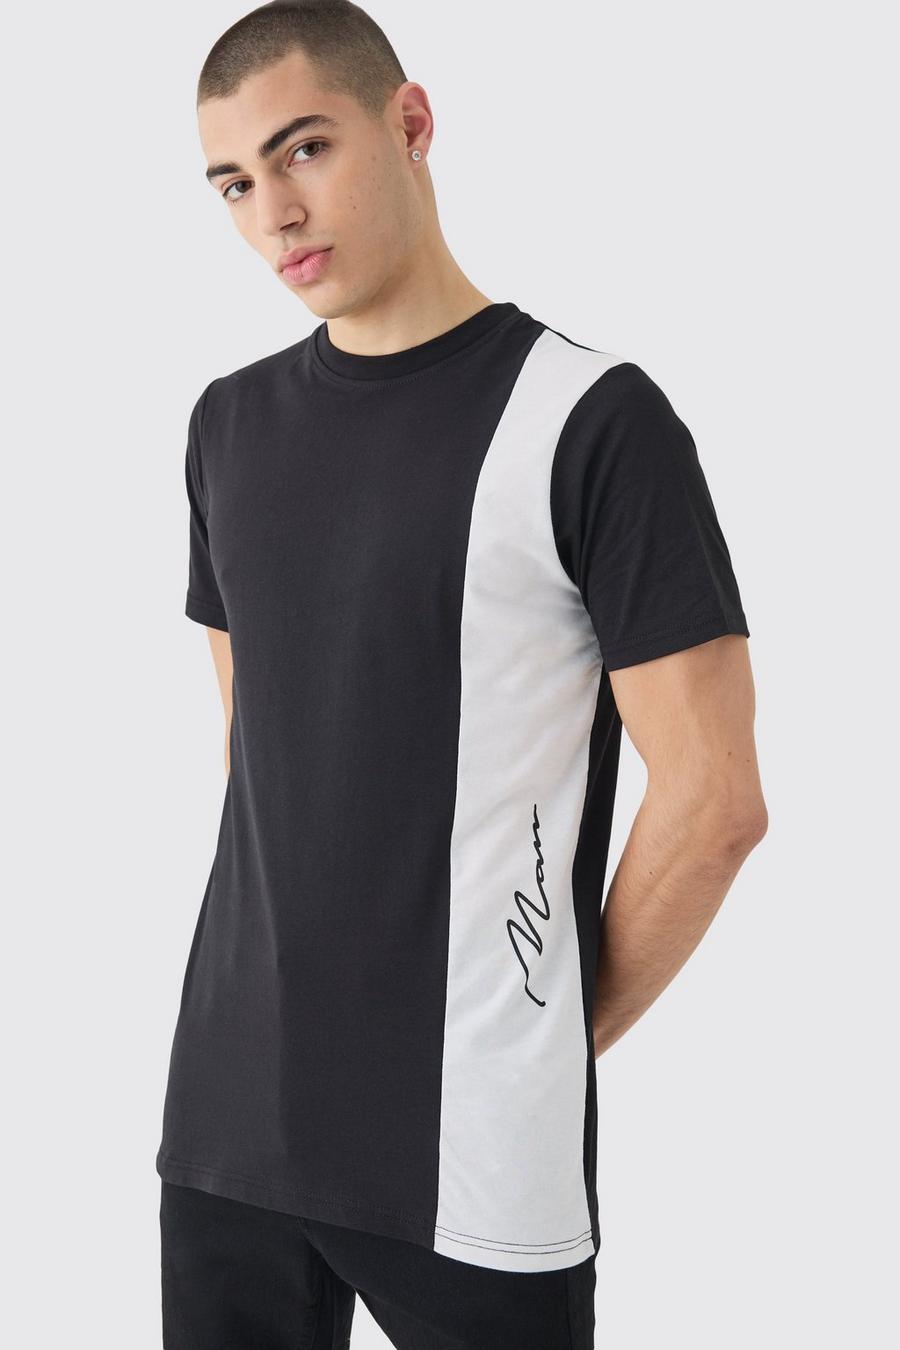 T-shirt Man Slim Fit con pannelli a blocchi di colore, Black